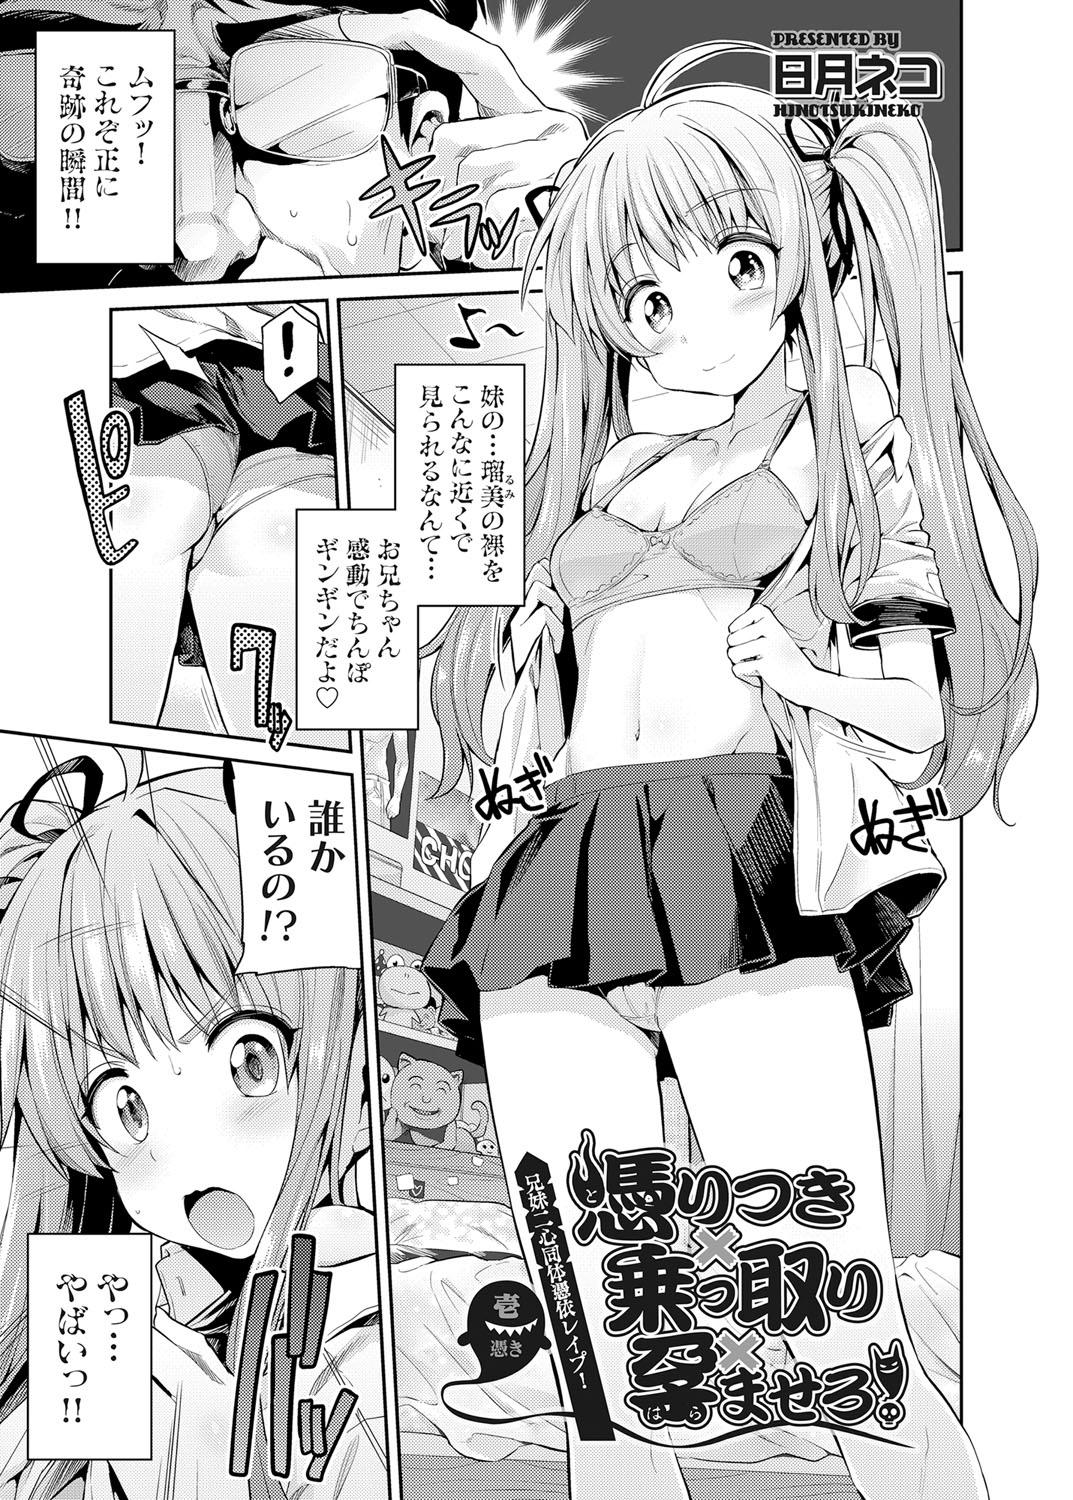 Super Hot Porn [Hinotsuki Neko] Tori-tsuki x Nottori x Haramasero! Ch. 1-4 Gapes Gaping Asshole - Picture 1